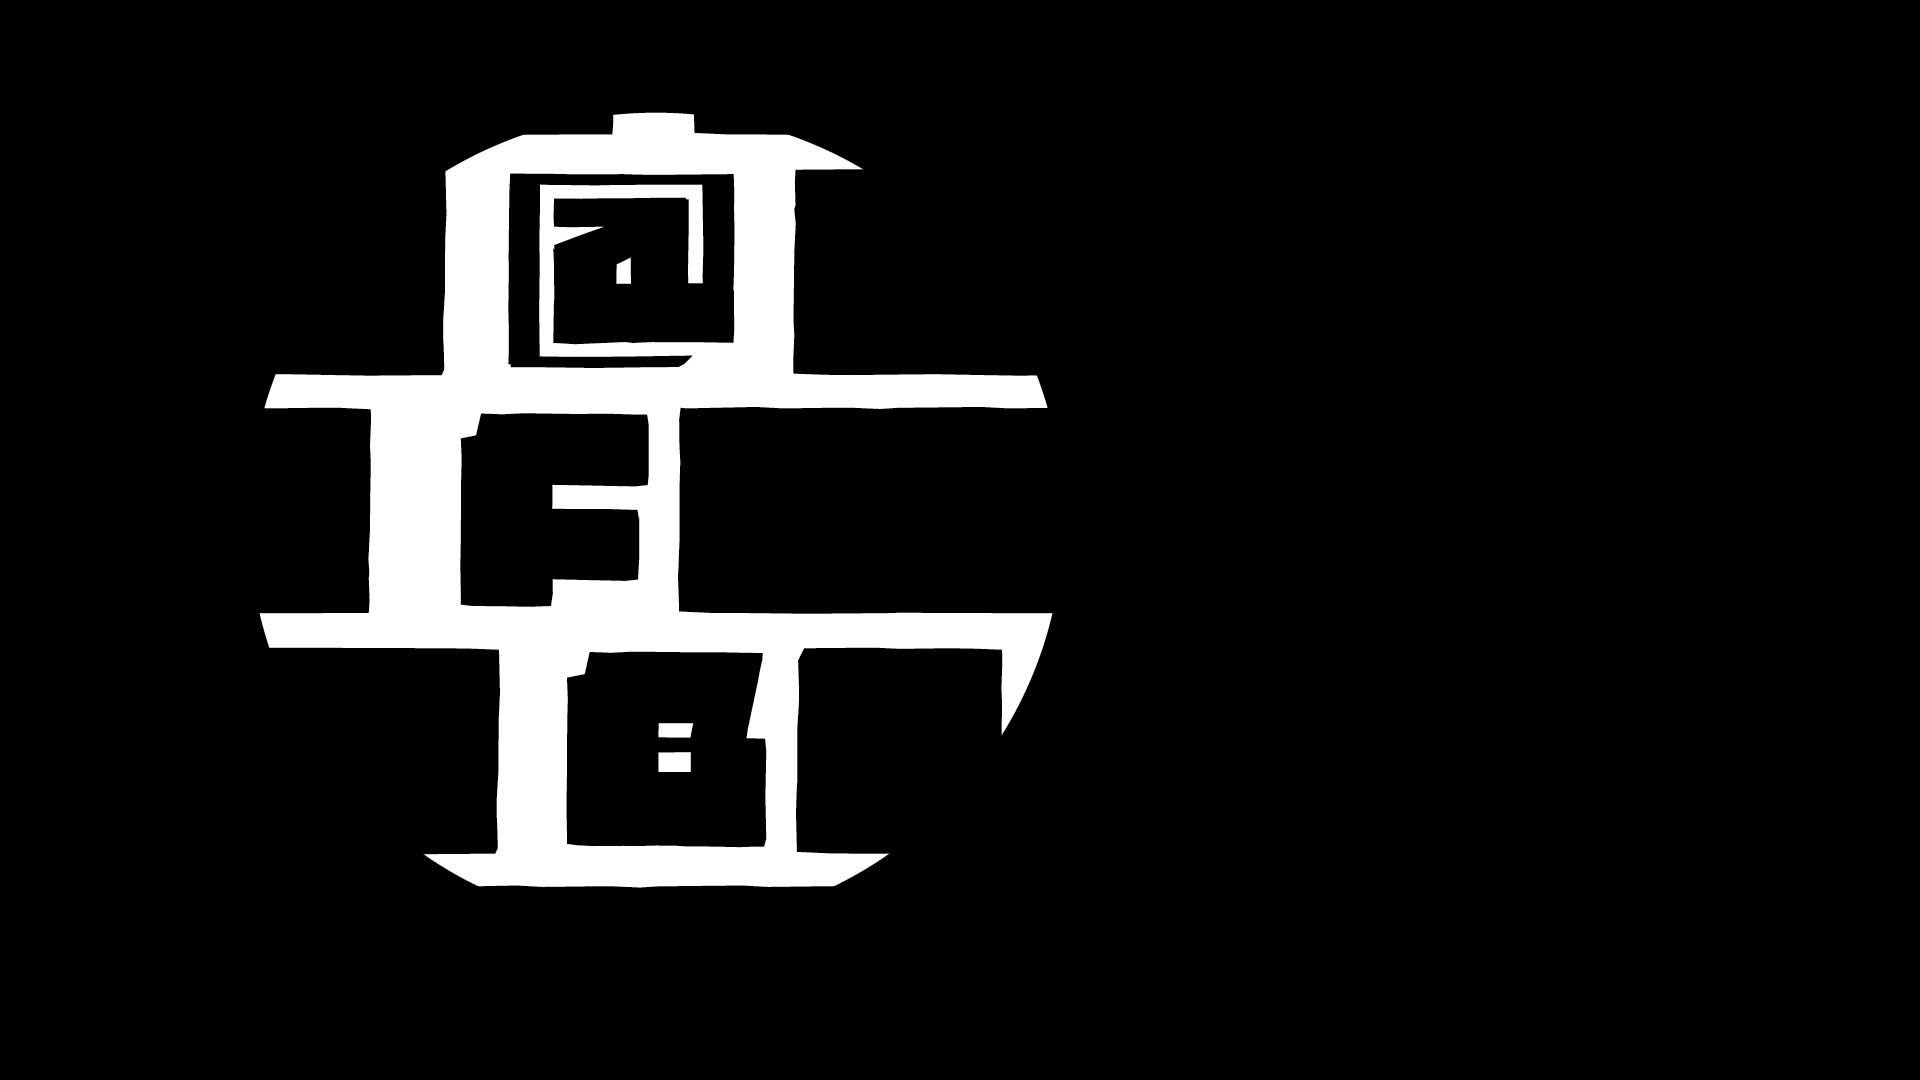 HANA STEIN – FrameBot – Logo